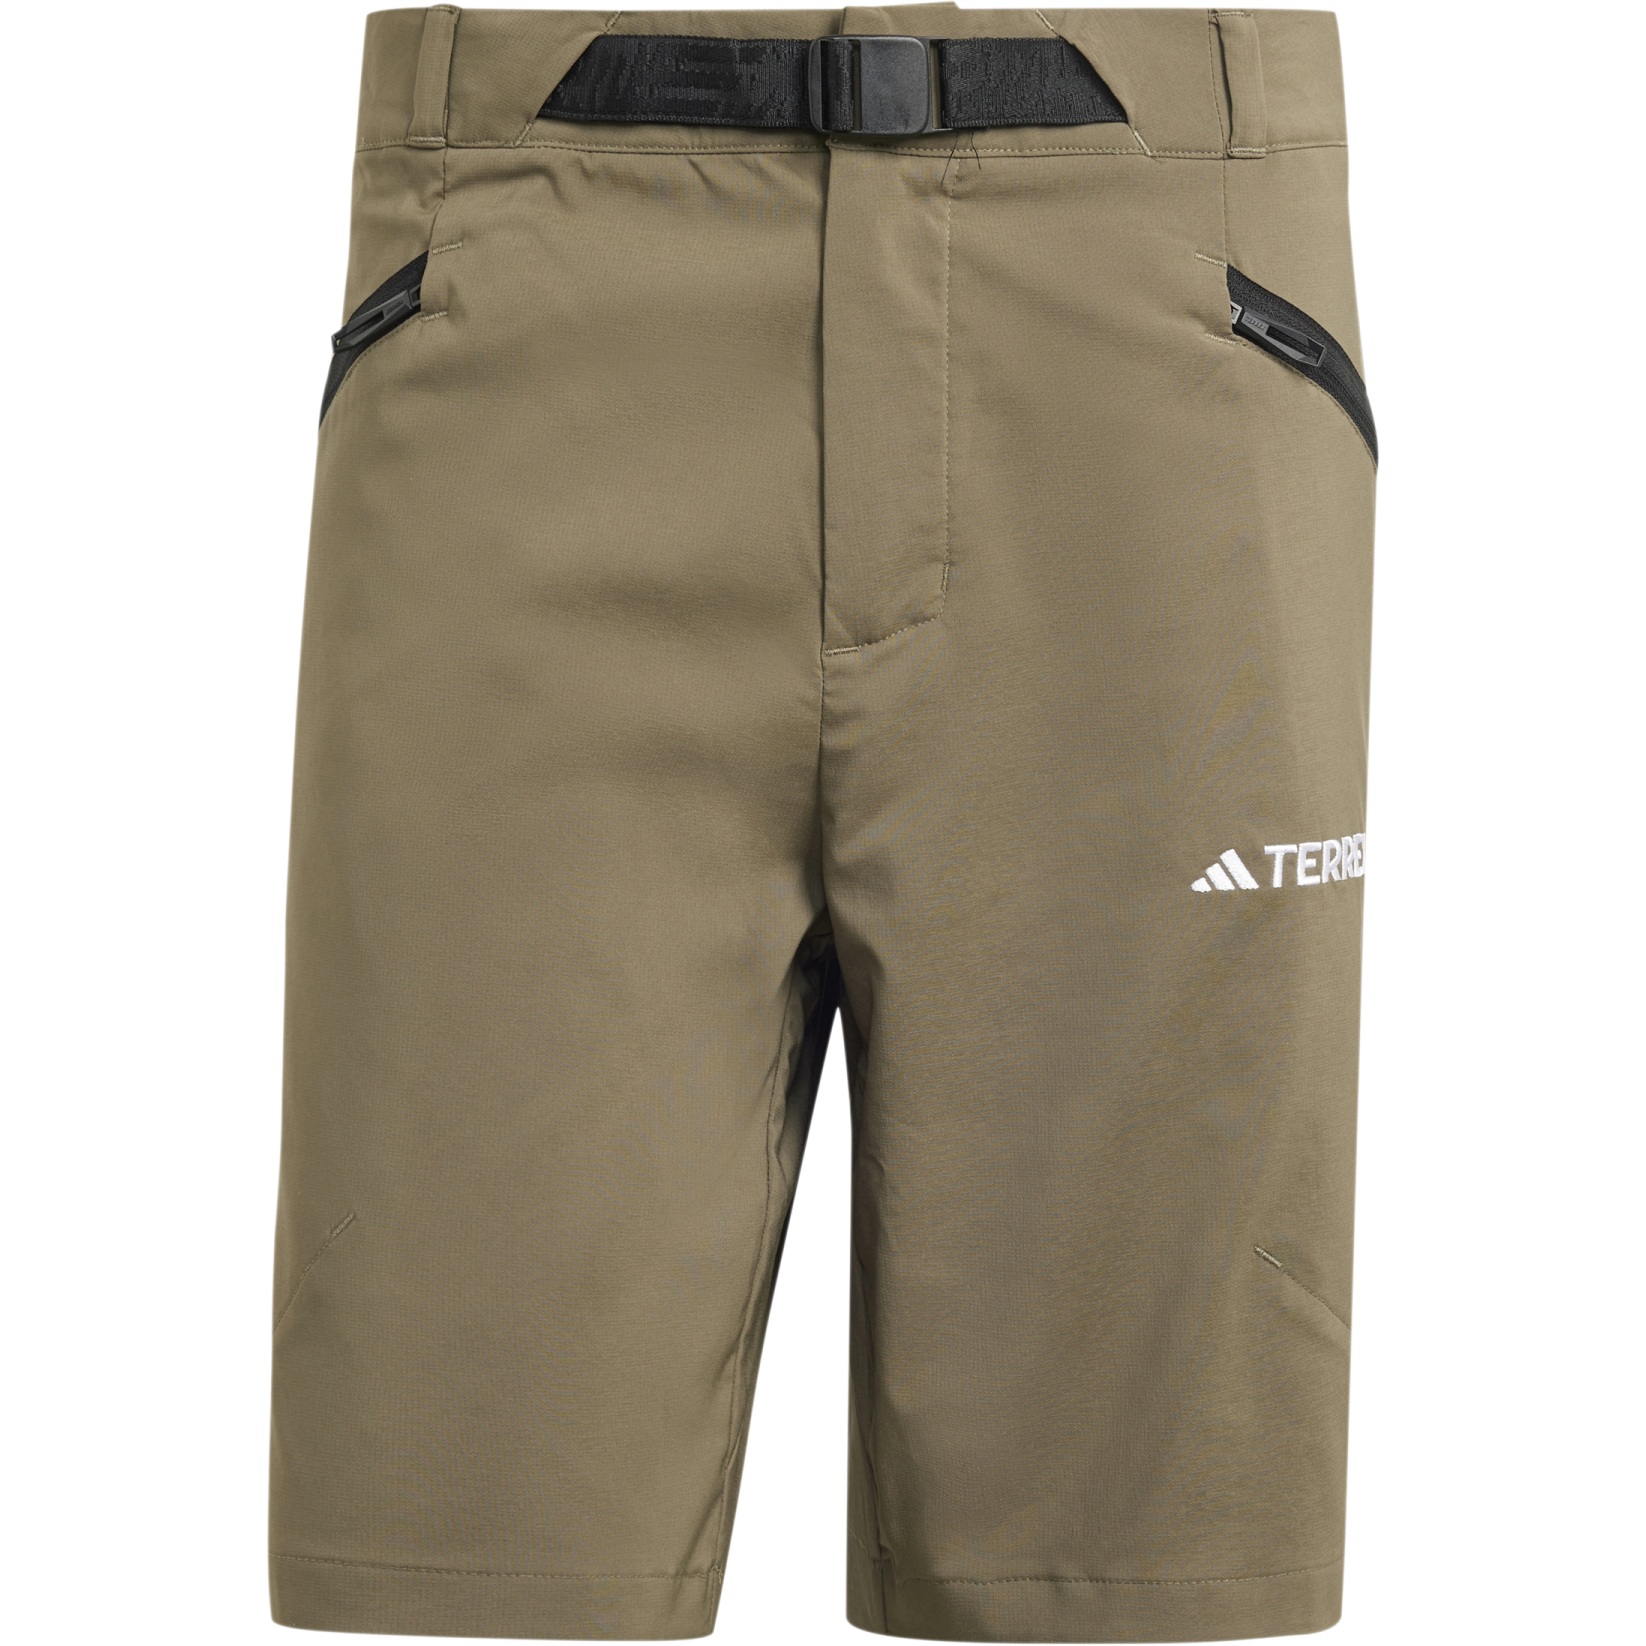 Produktbild von adidas TERREX Xperior Mid Shorts Herren - olive strata IJ8303